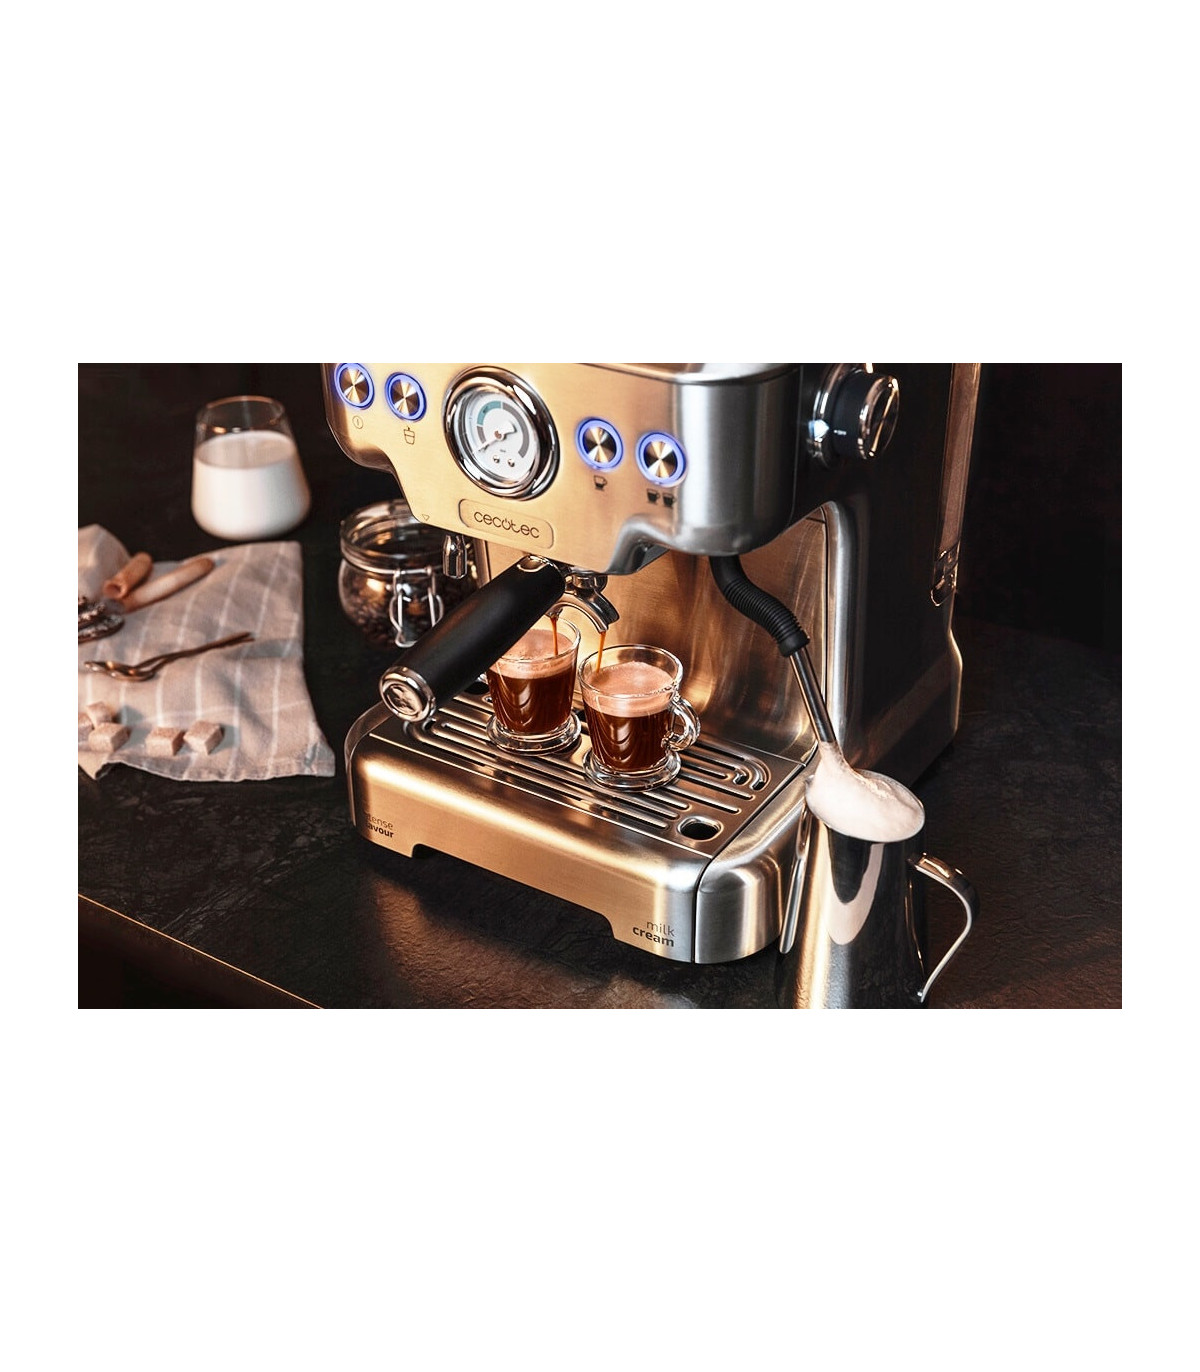 Cafetera Power Espresso: la cafetera de Cecotec más vendida en